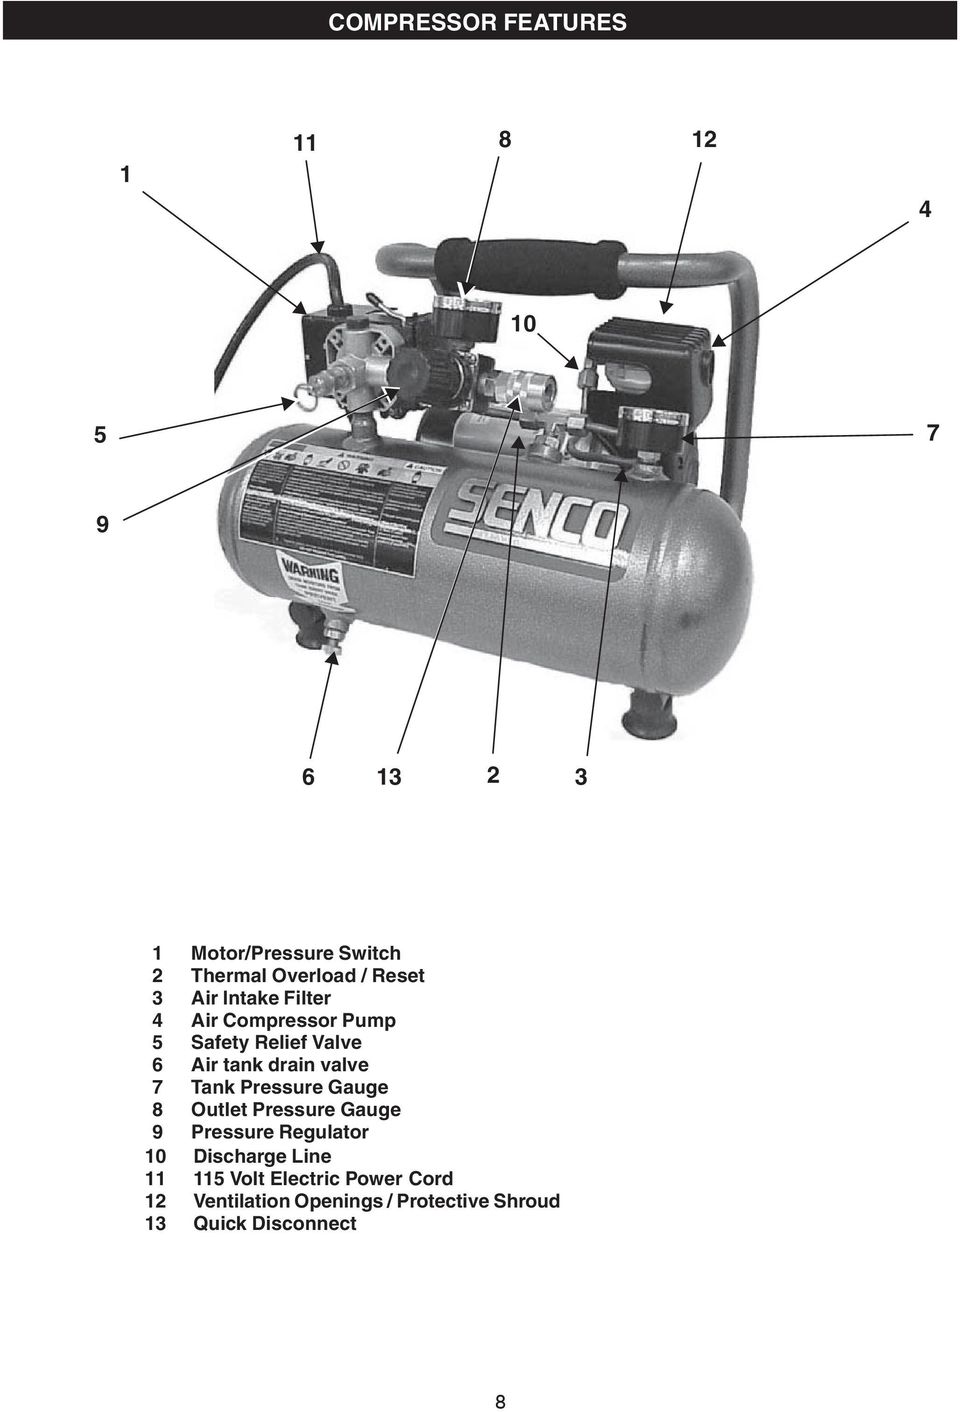 valve 7 Tank Pressure Gauge 8 Outlet Pressure Gauge 9 Pressure Regulator 10 Discharge Line